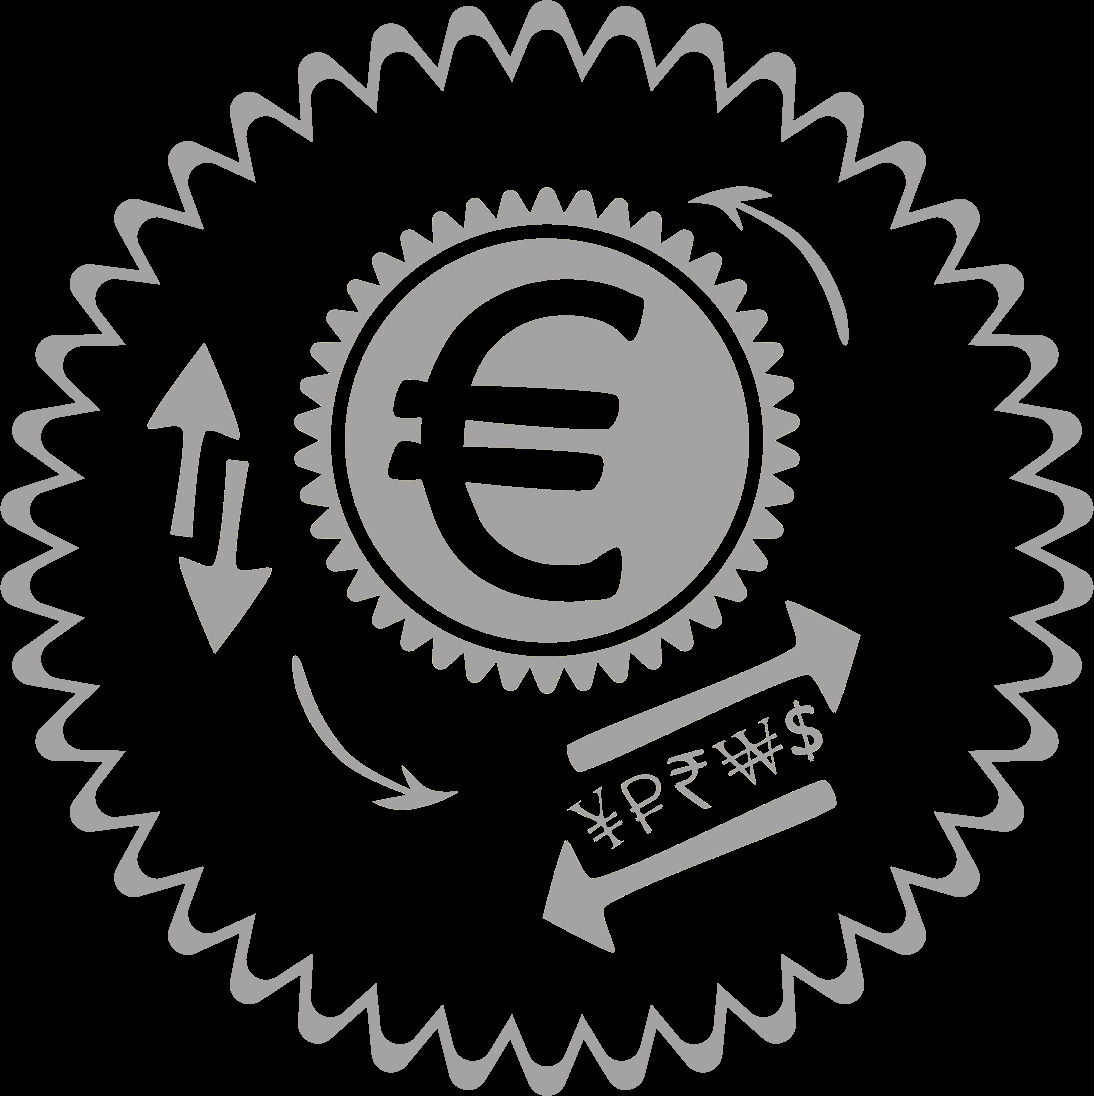 Site's logo.